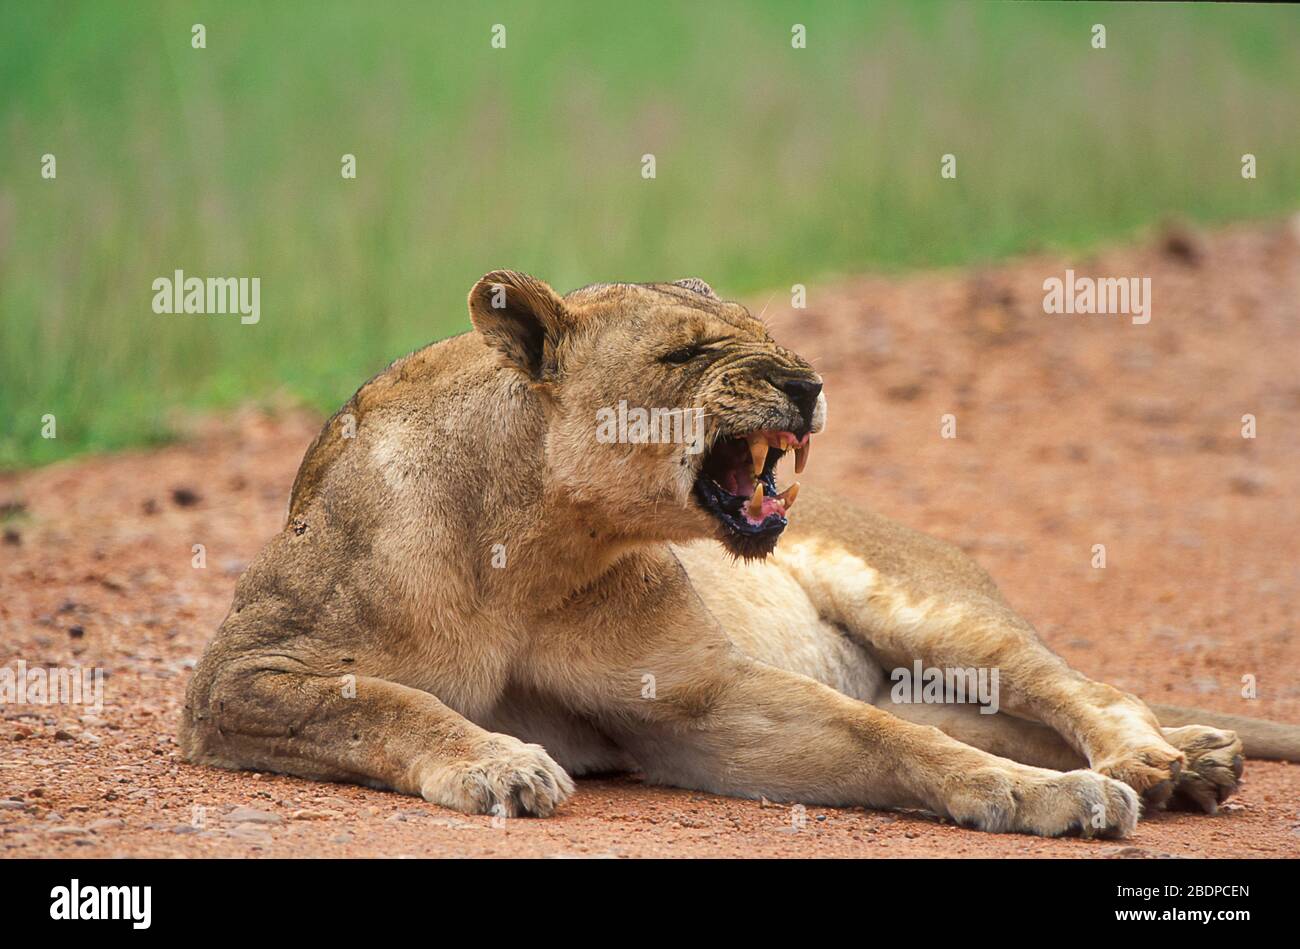 Lion, Panthera leo, Zimbabwe, Afrique, femme, grognement, sharling Banque D'Images